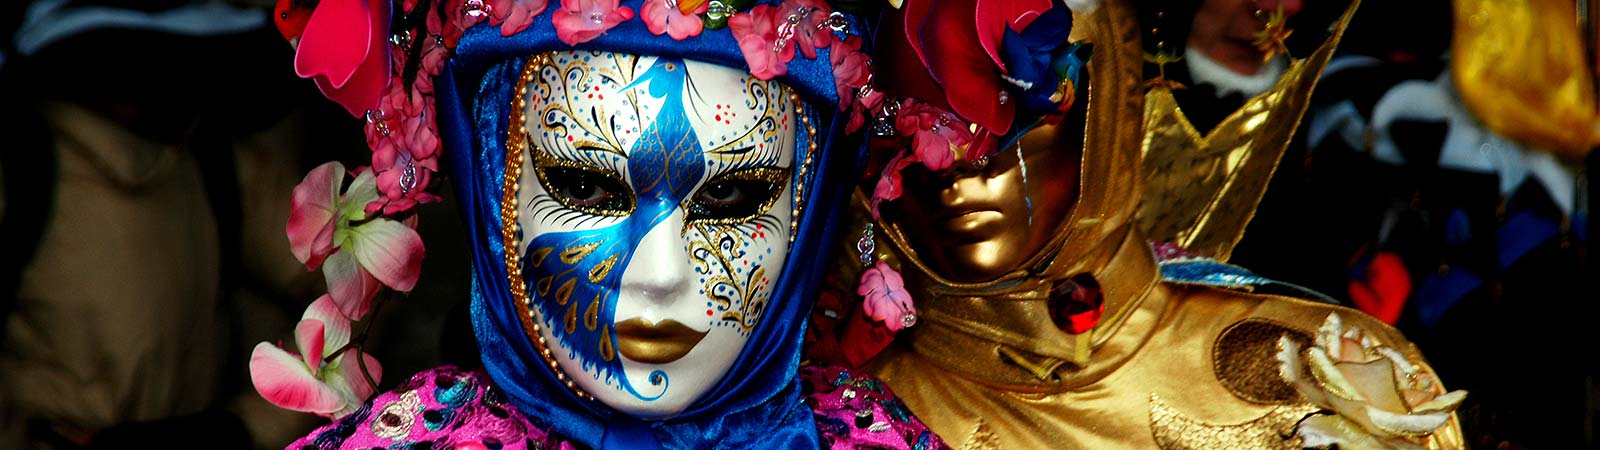 Venice_Carnival_2015